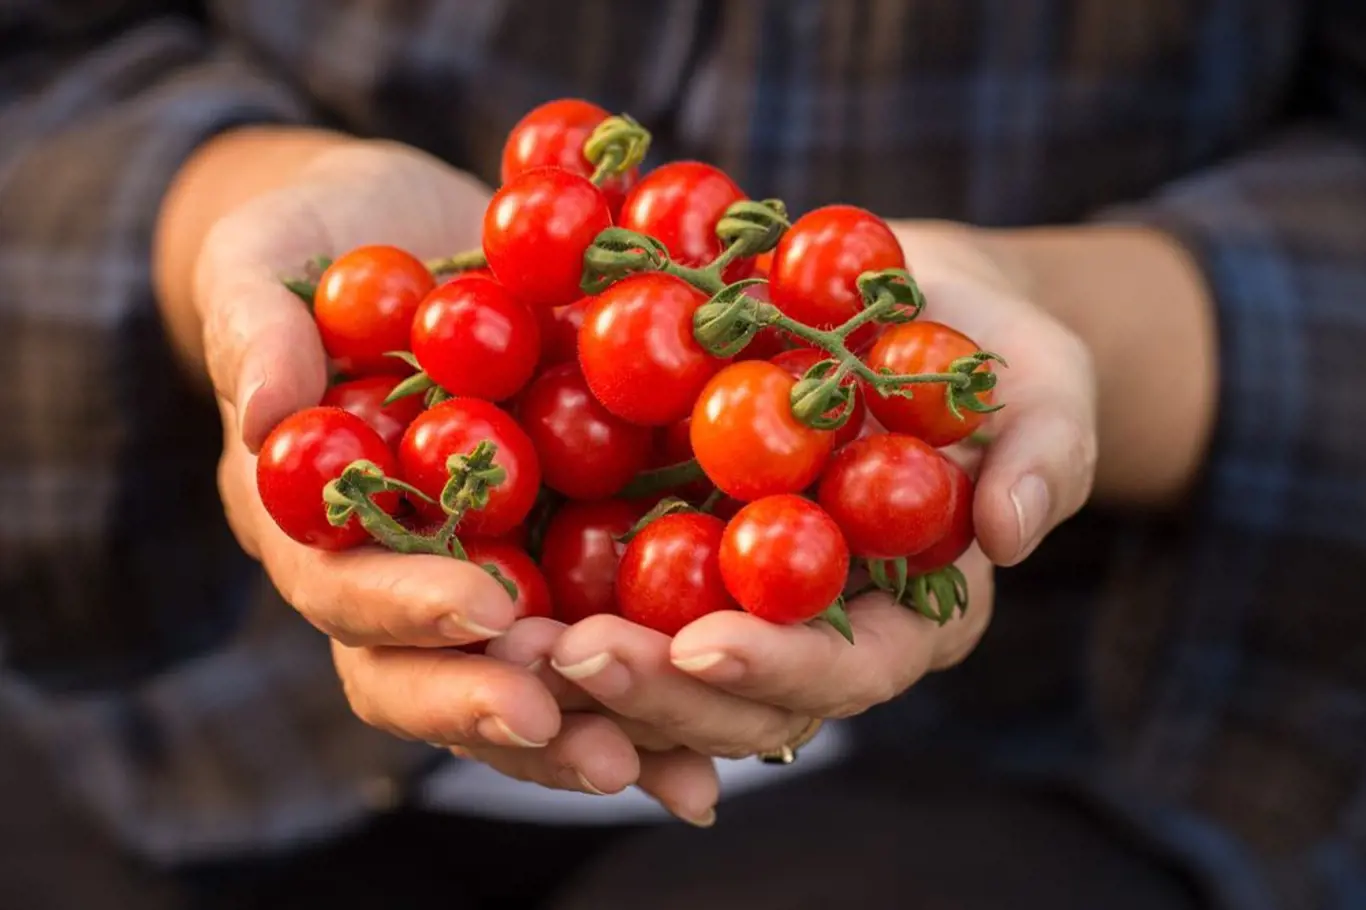 Doma vypěstovaná rajčátka jsou nesladší, na odrůdě však záleží také